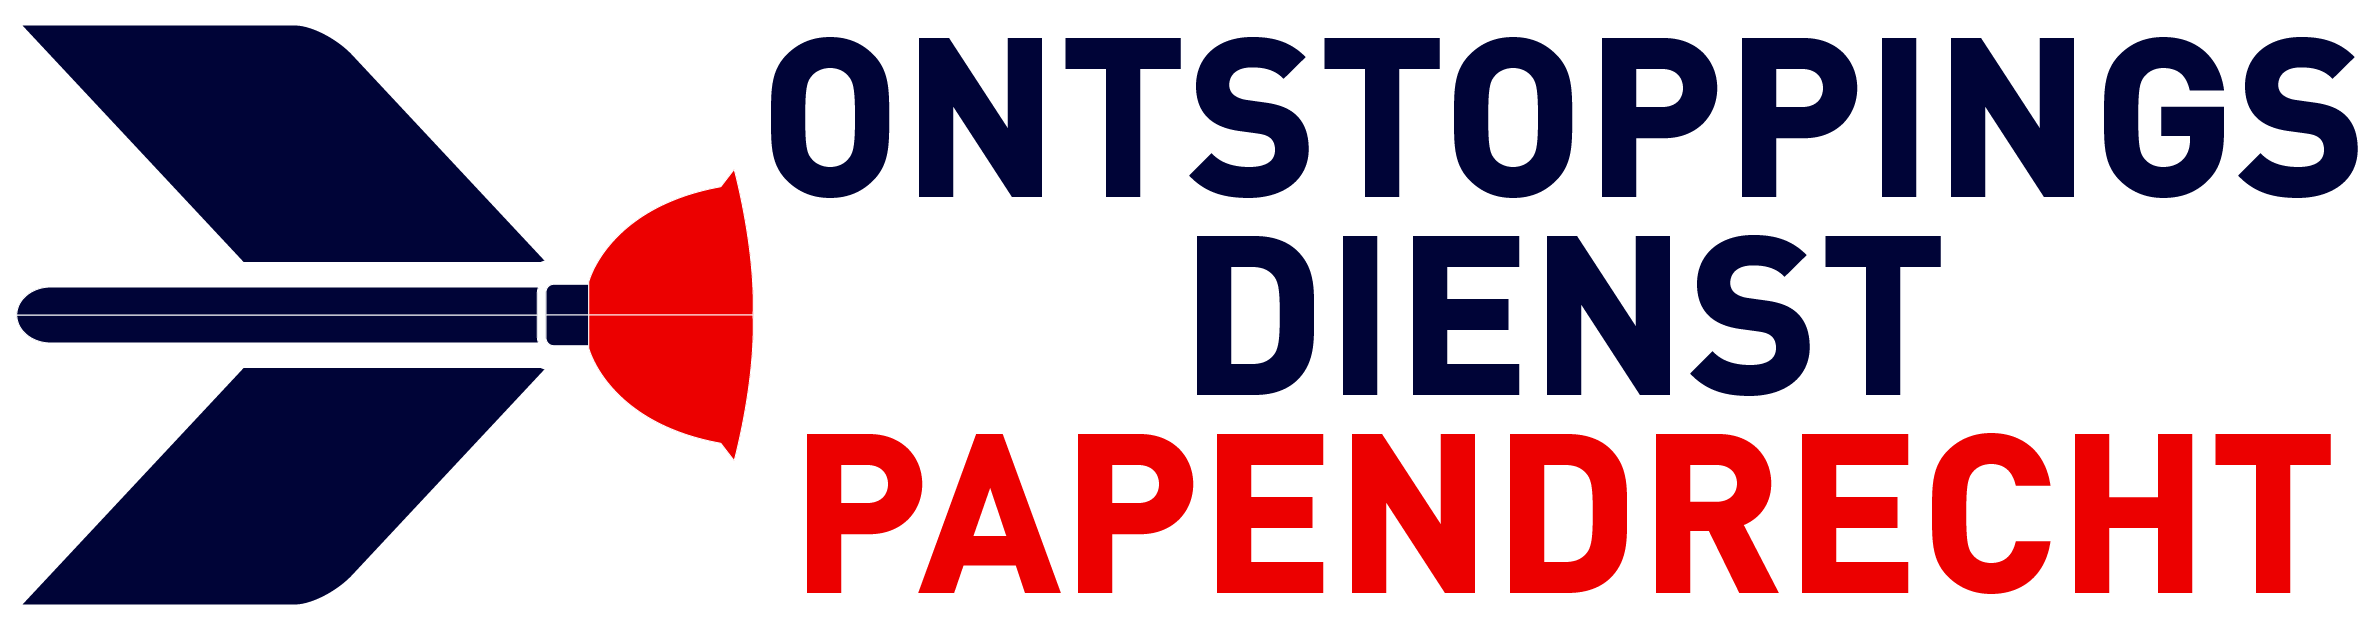 Ontstoppingsdienst Papendrecht logo